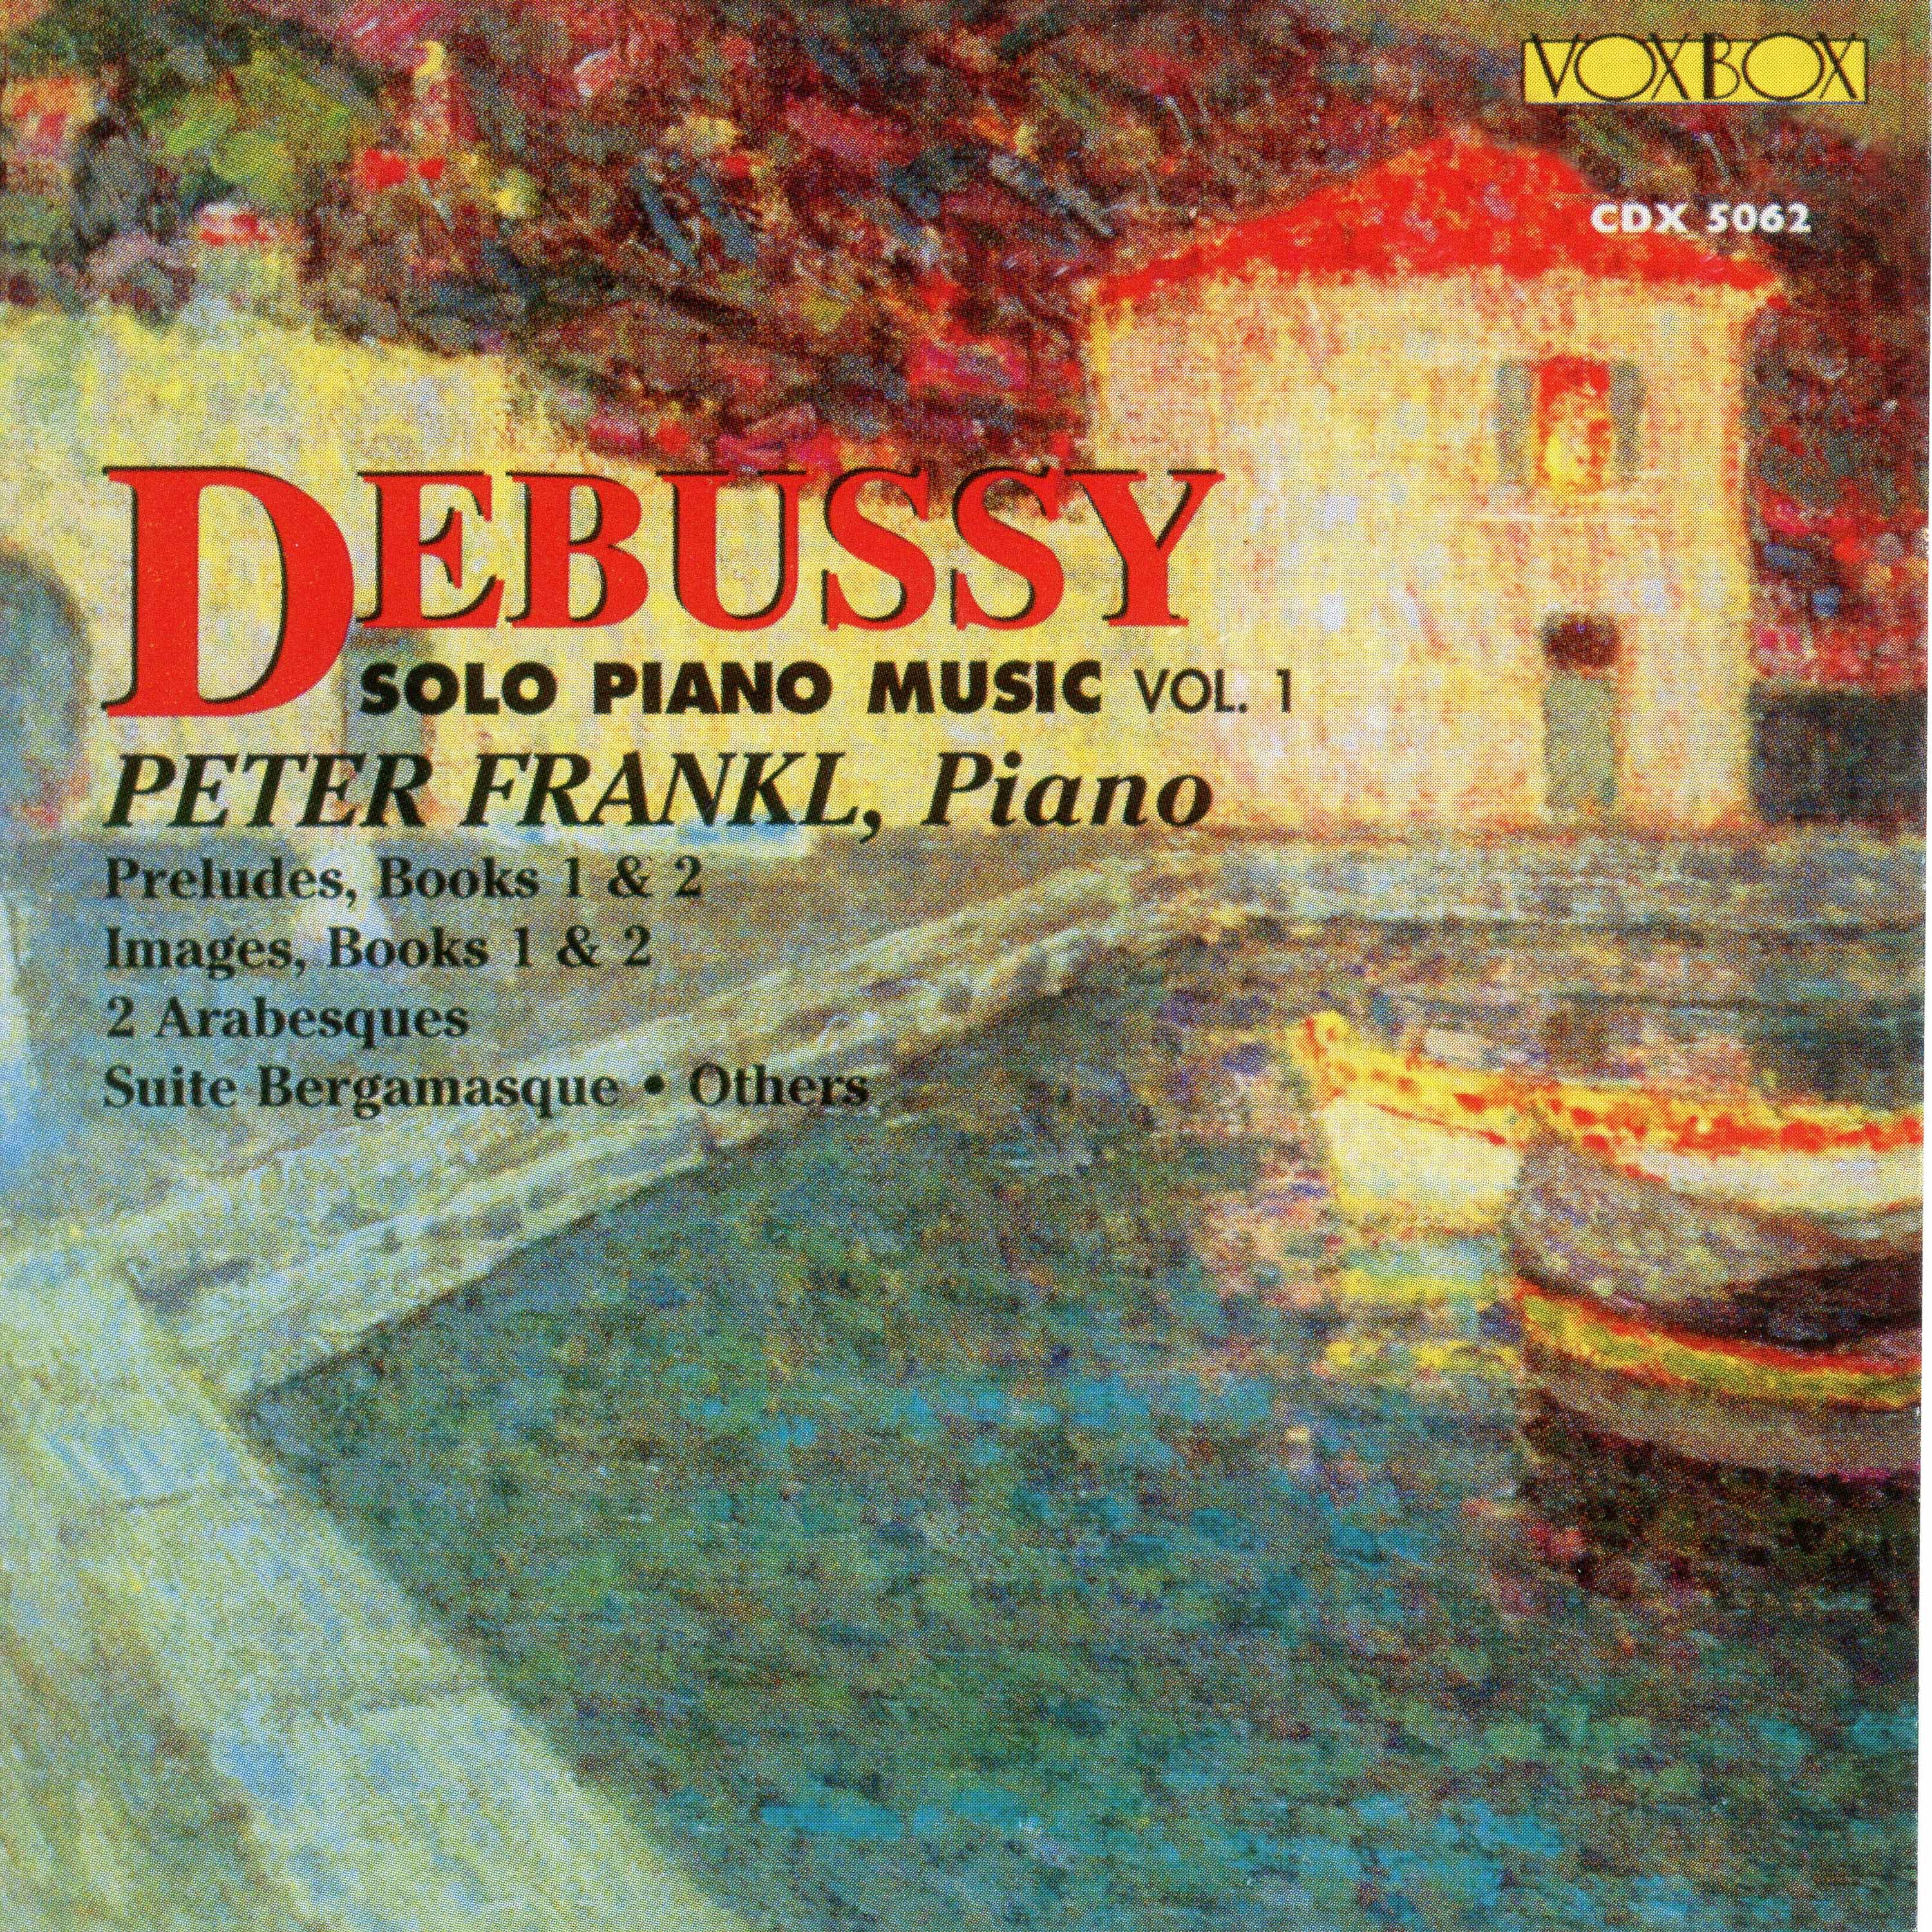 Debussy: Solo Piano Music, Vol. 1